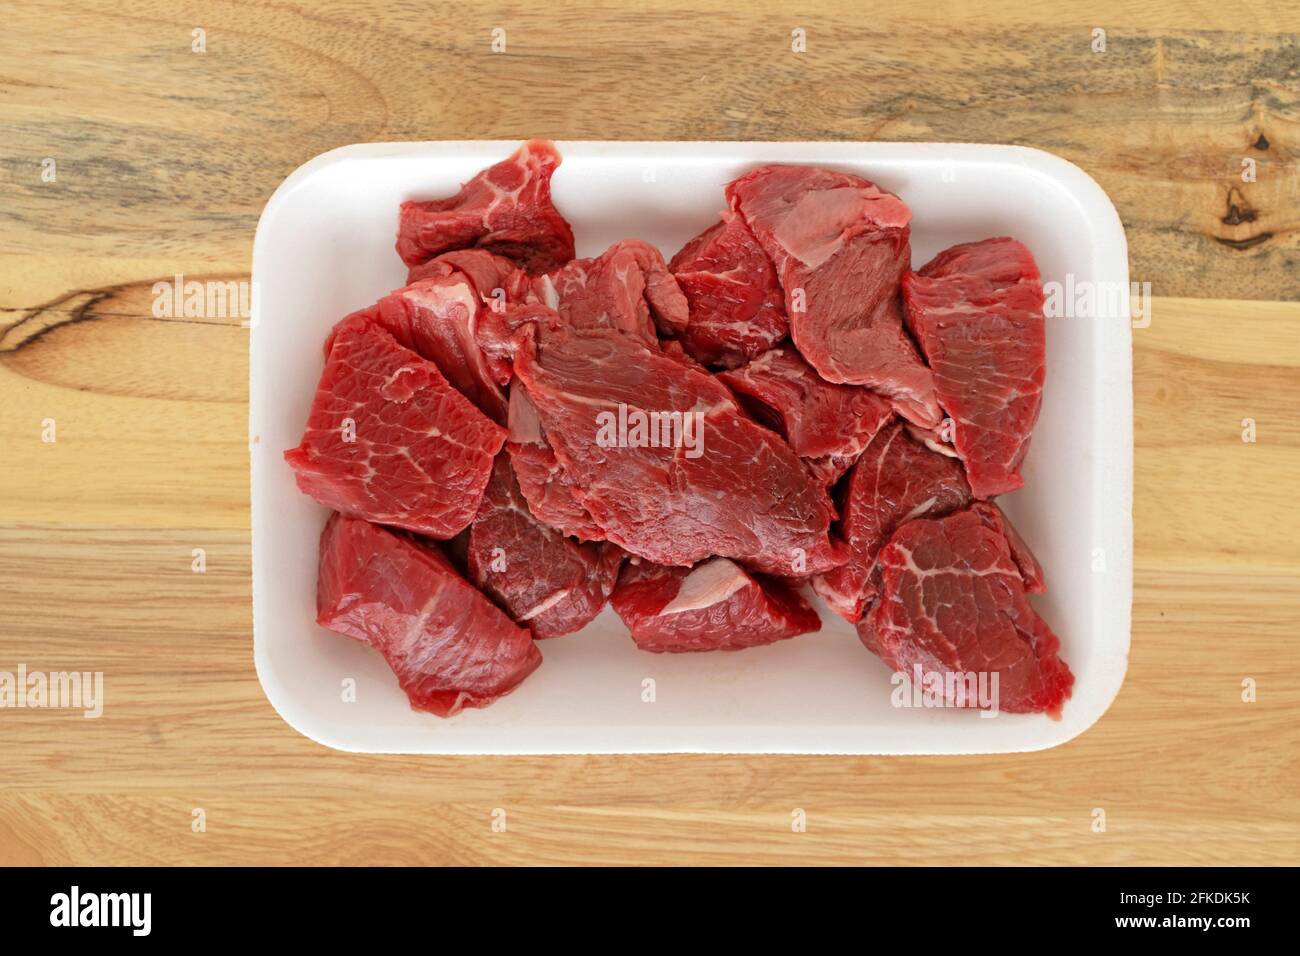 Emballage de viande de bœuf, morceaux de viande crue, hachés Banque D'Images